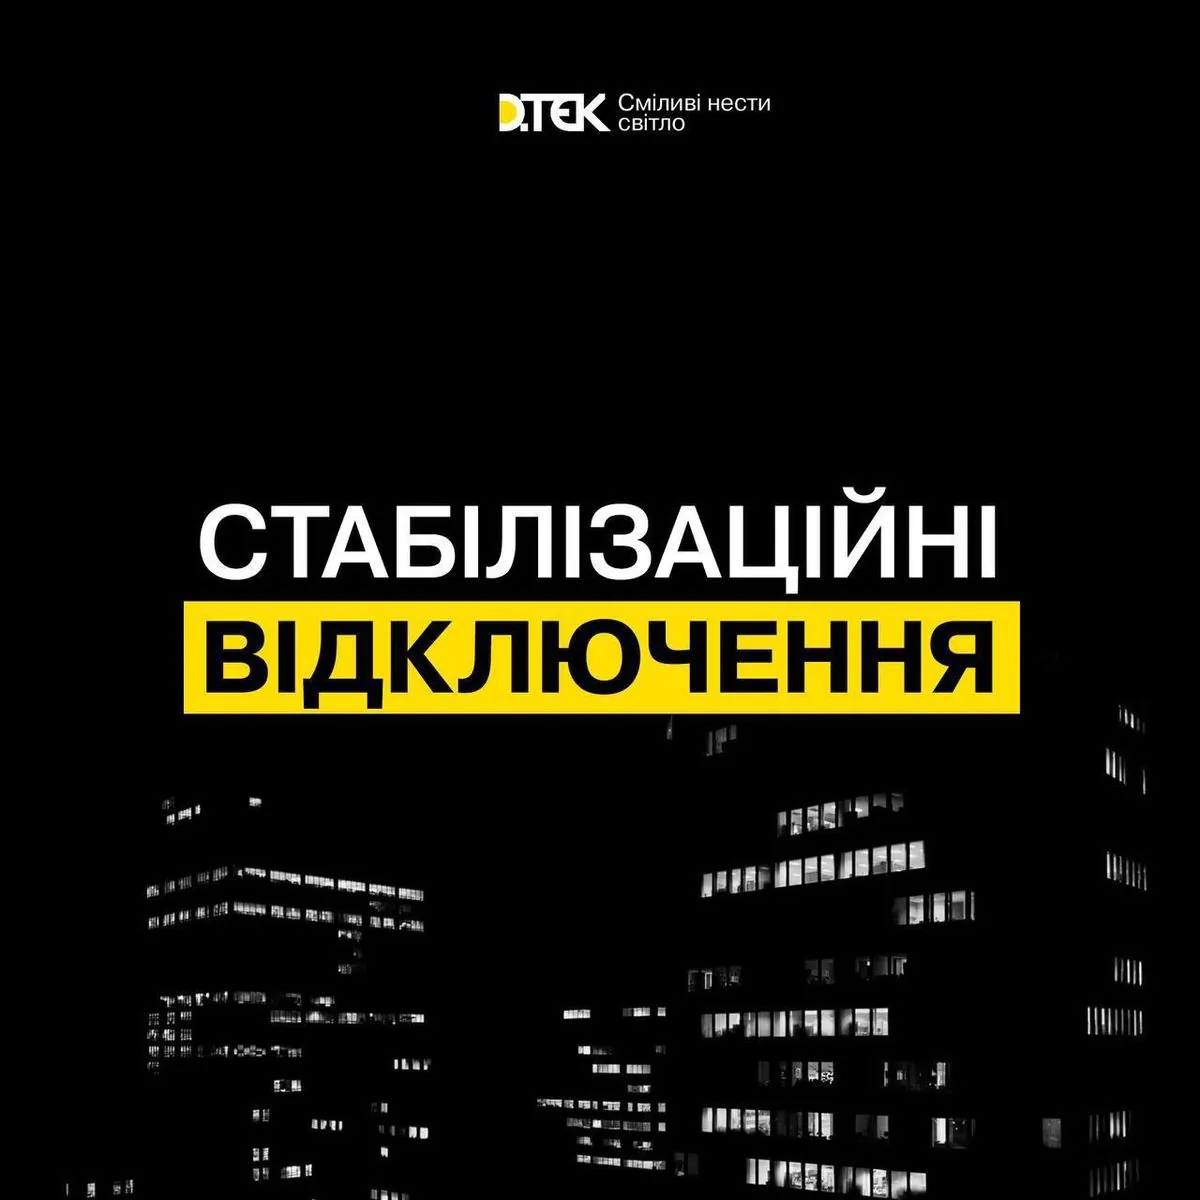 Завтра в Україні графіки відключень будуть діяти впродовж доби